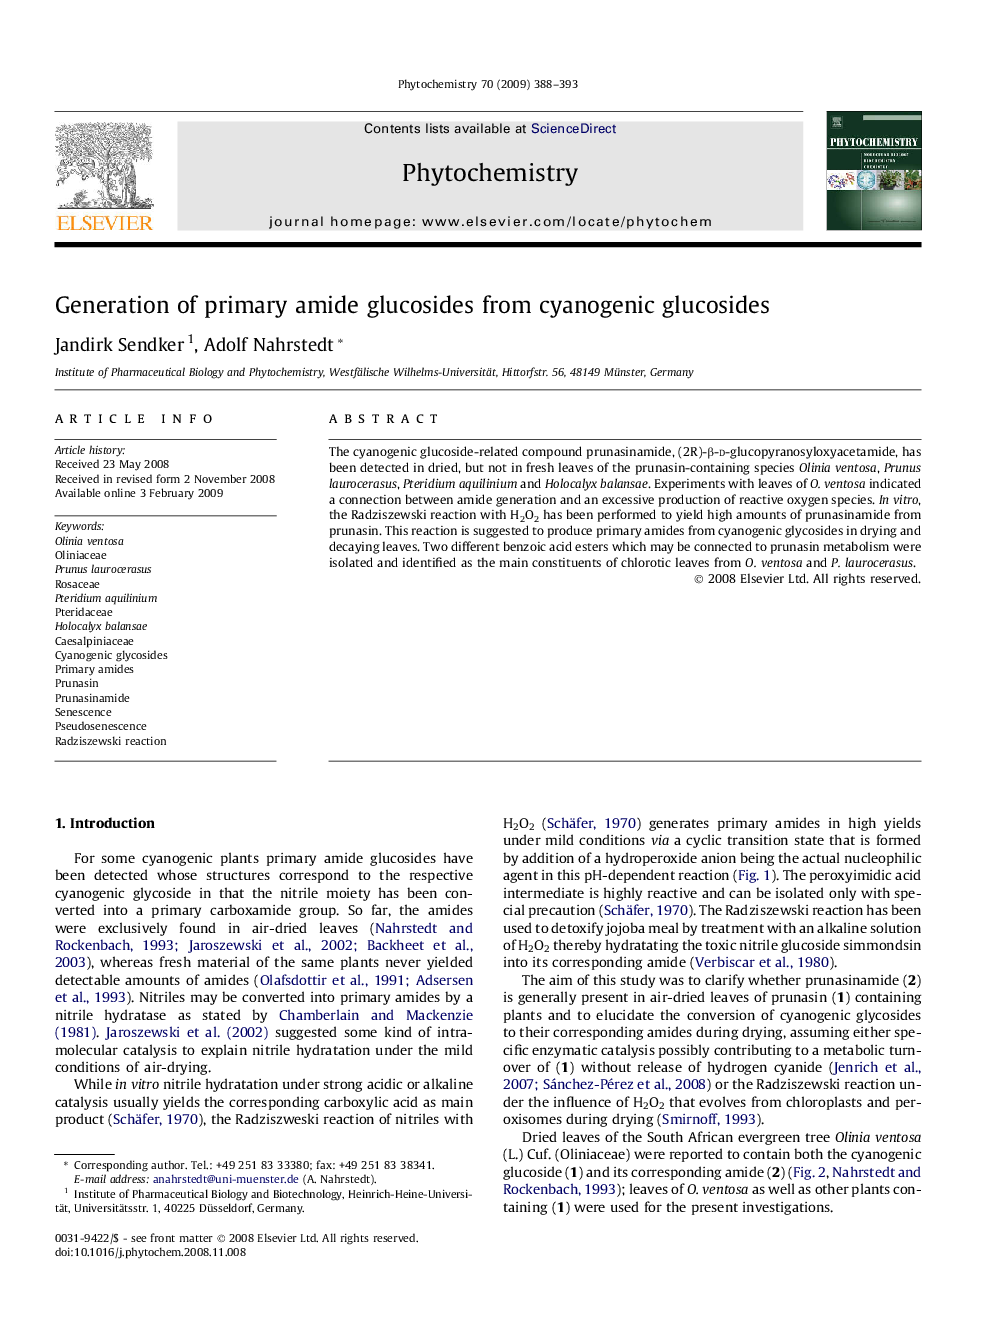 Generation of primary amide glucosides from cyanogenic glucosides